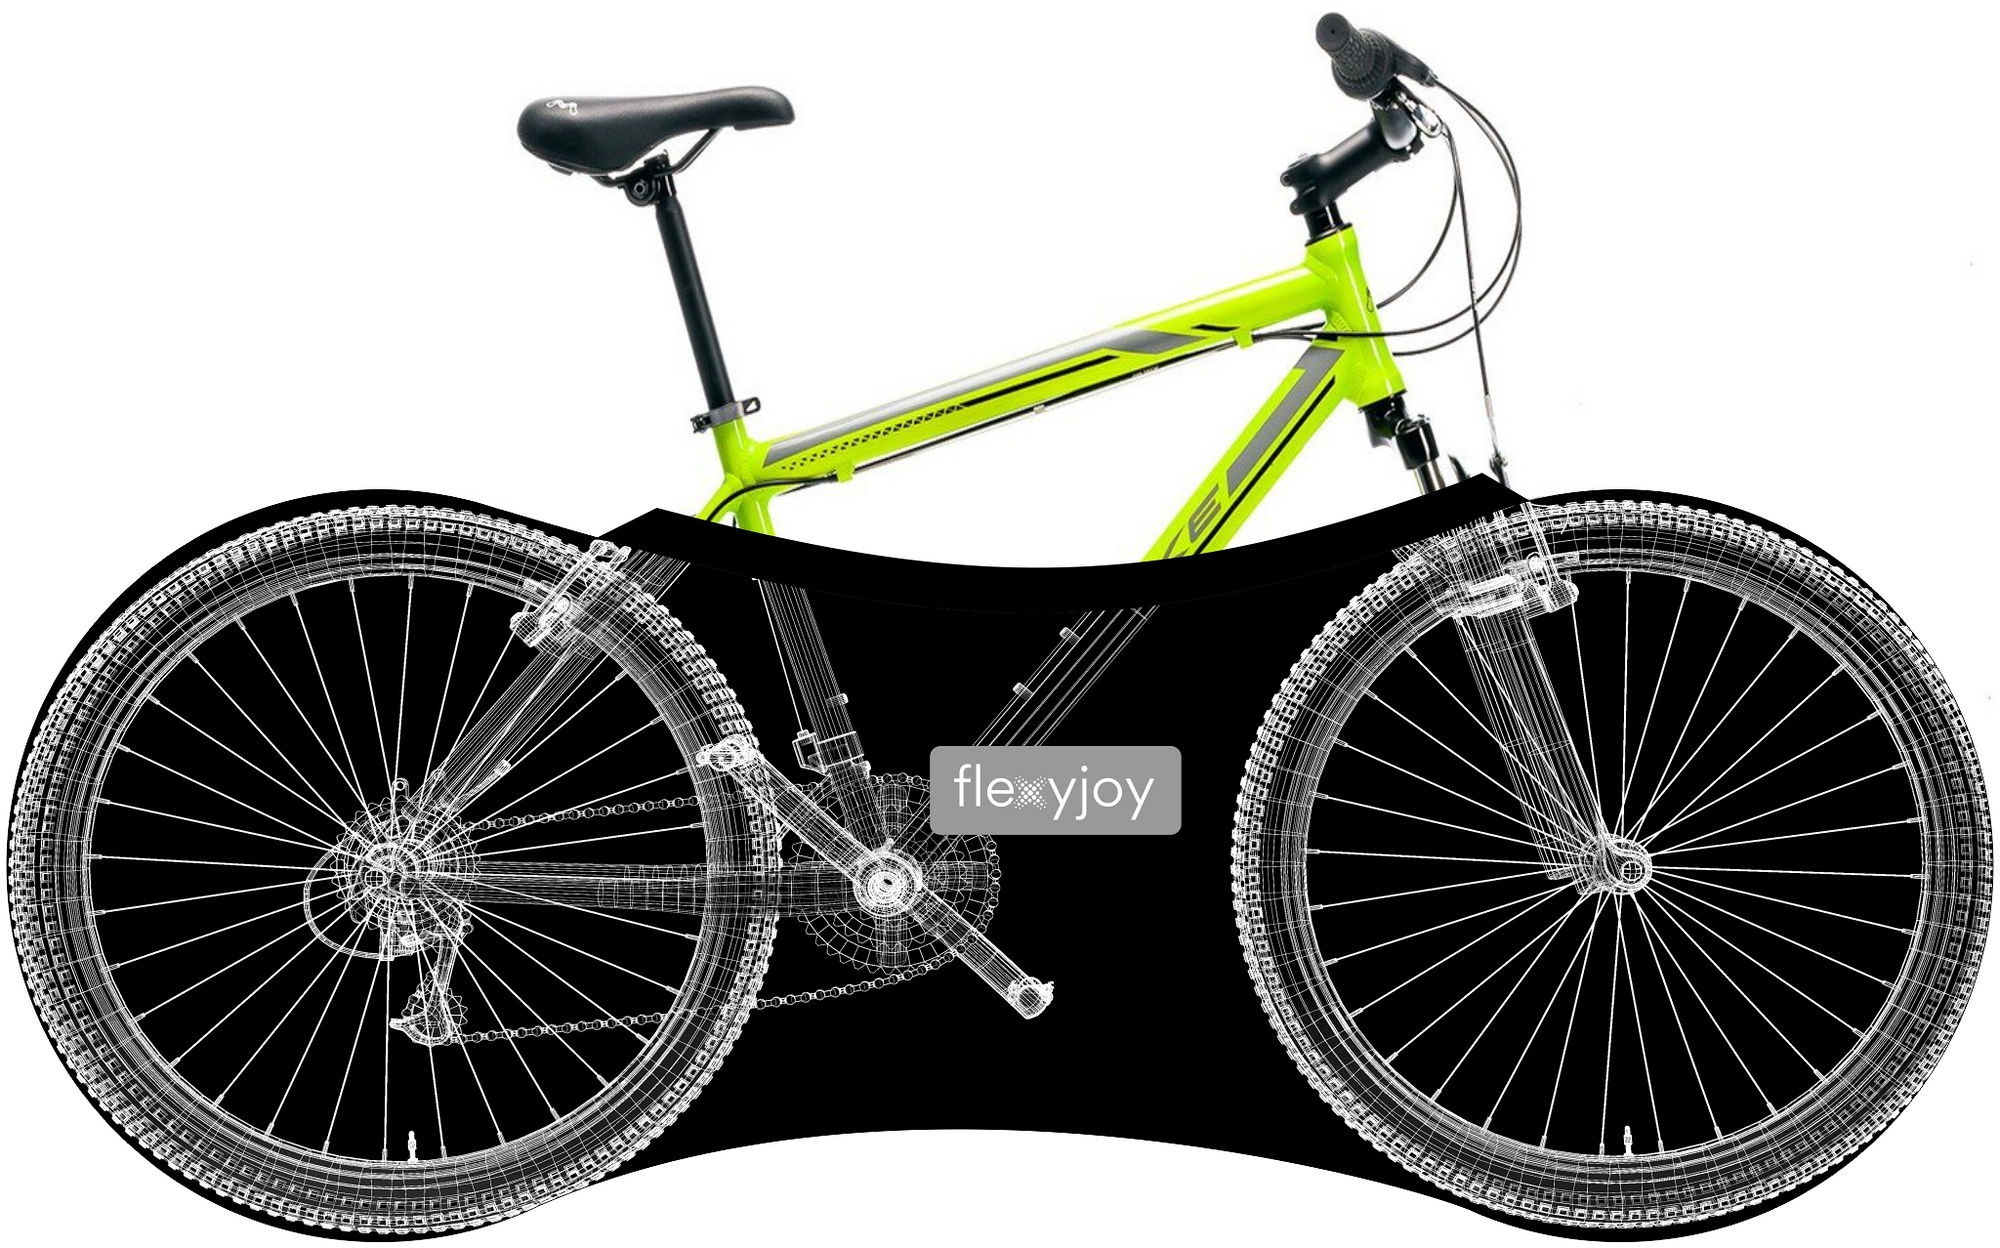 Фото - Велосумка Flexyjoy Elastyczny, uniwersalny pokrowiec rowerowy FlexyJoy FJB812